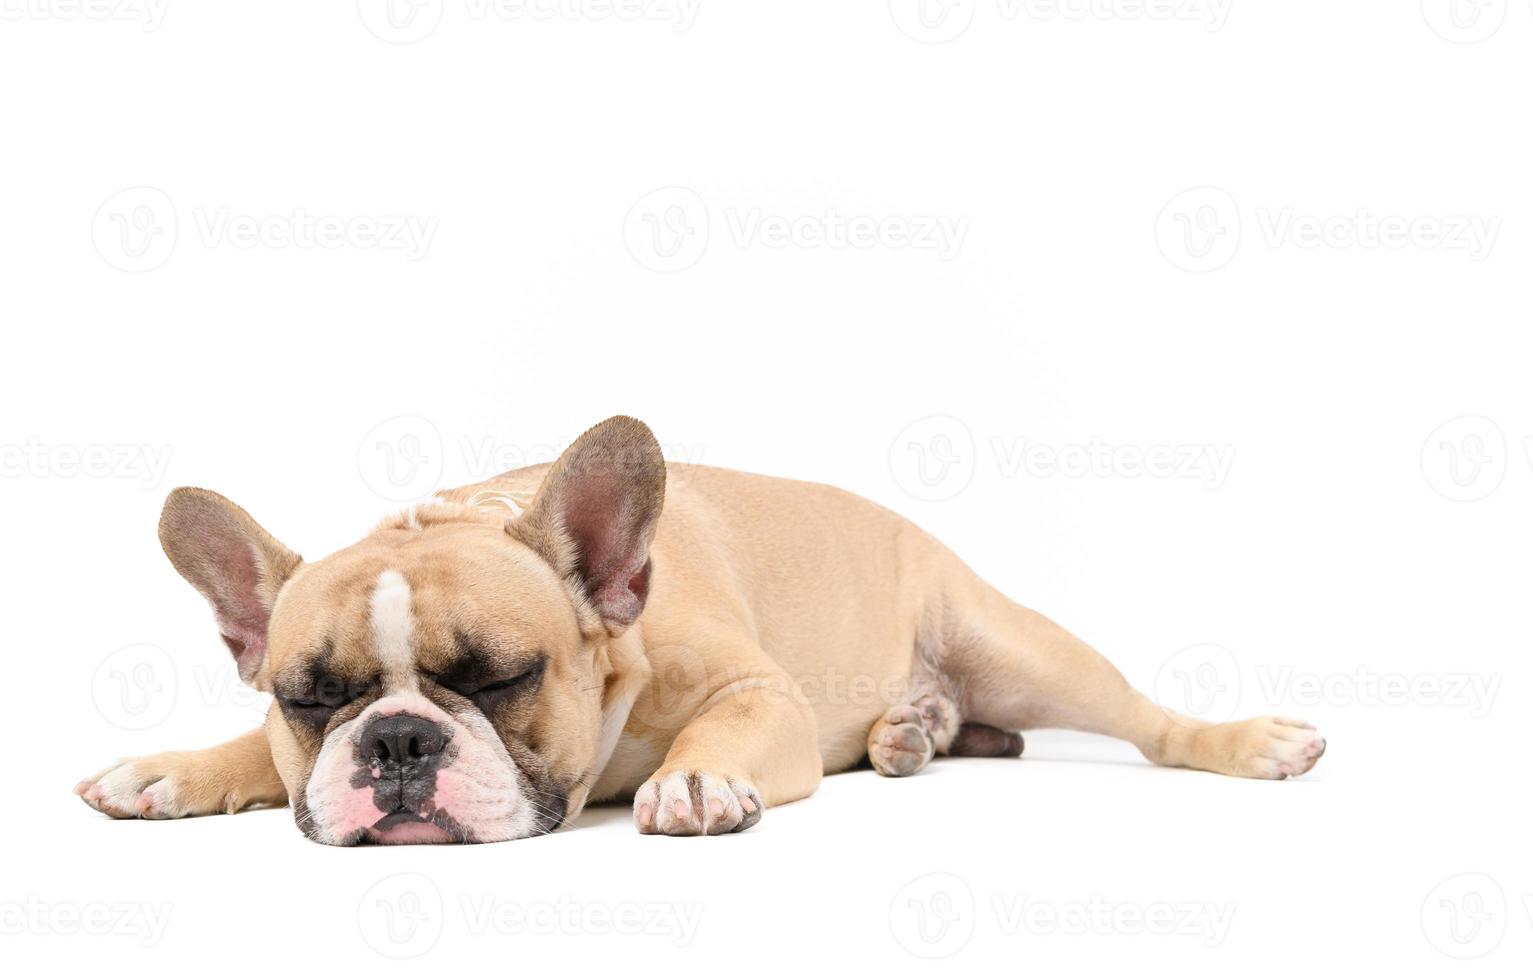 ett anorektisk franska bulldogg liggande sömn isolerat på en vit bakgrund, foto